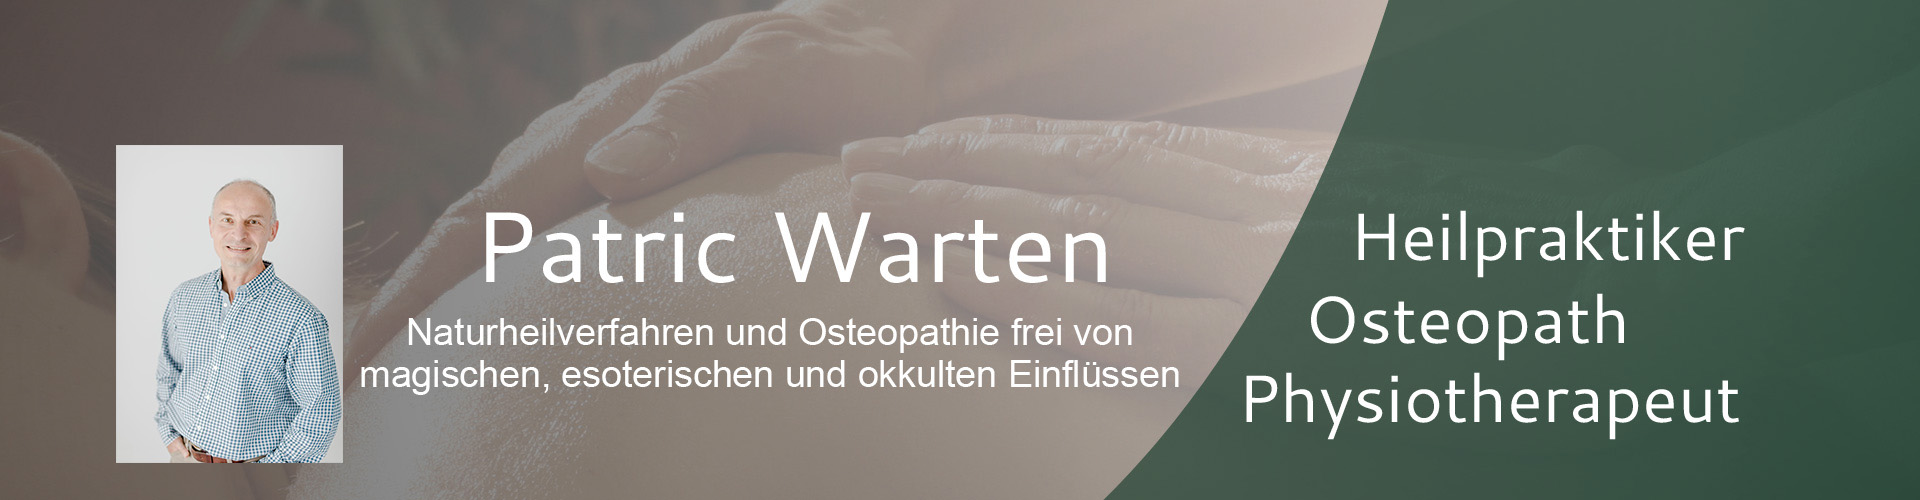 Patric Warten Heilpraktiker und Osteopath